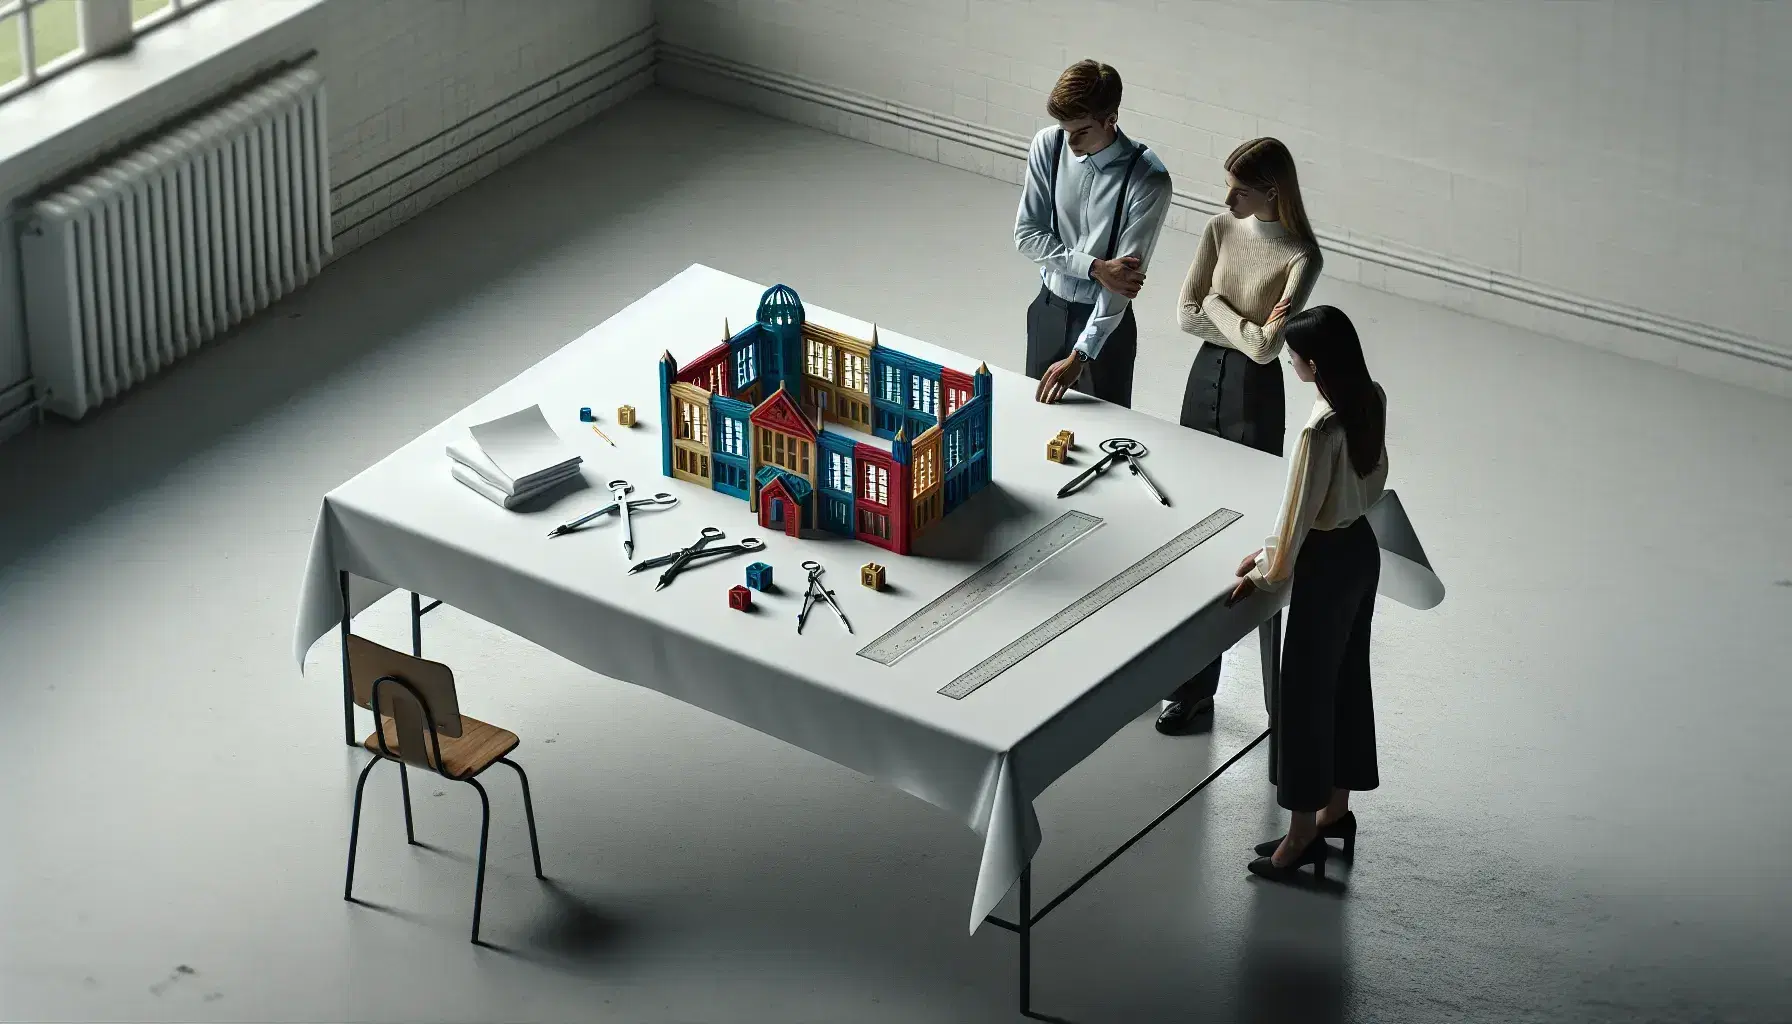 Tres profesionales discuten un proyecto de construcción escolar representado por un modelo de bloques de colores, con regla, compás y papeles sobre una mesa.